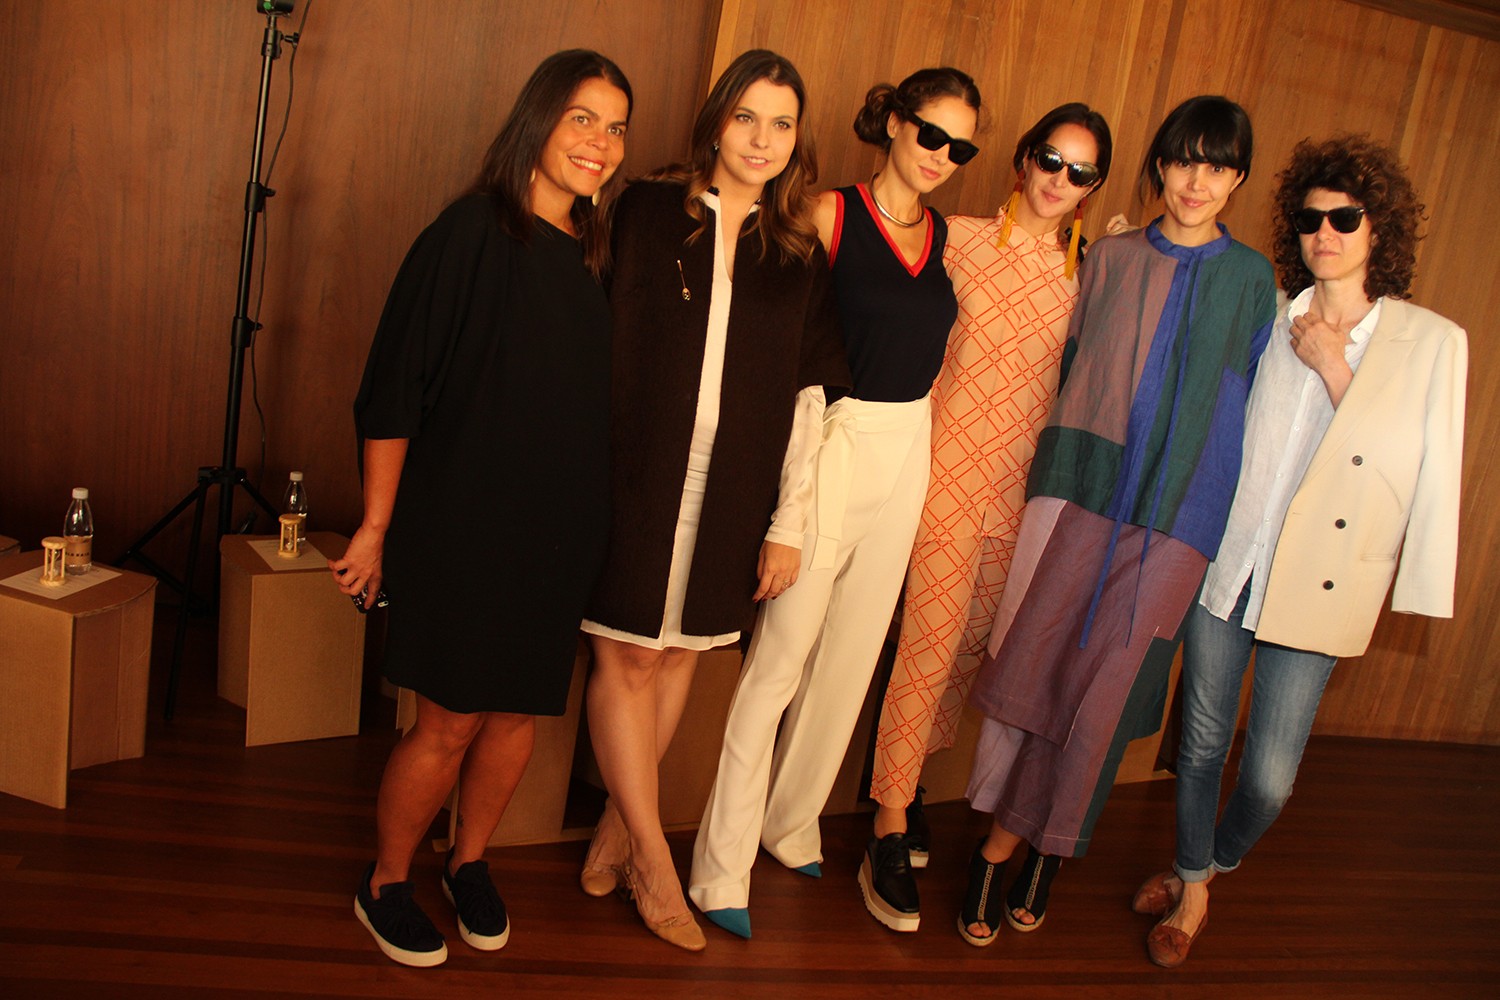 Daniela Falcão e Vivian Sotocorno, do Vogue team, com Giovanna Meneghel, Vanda Jacintho, Karina Motta e Camila Bossolan     